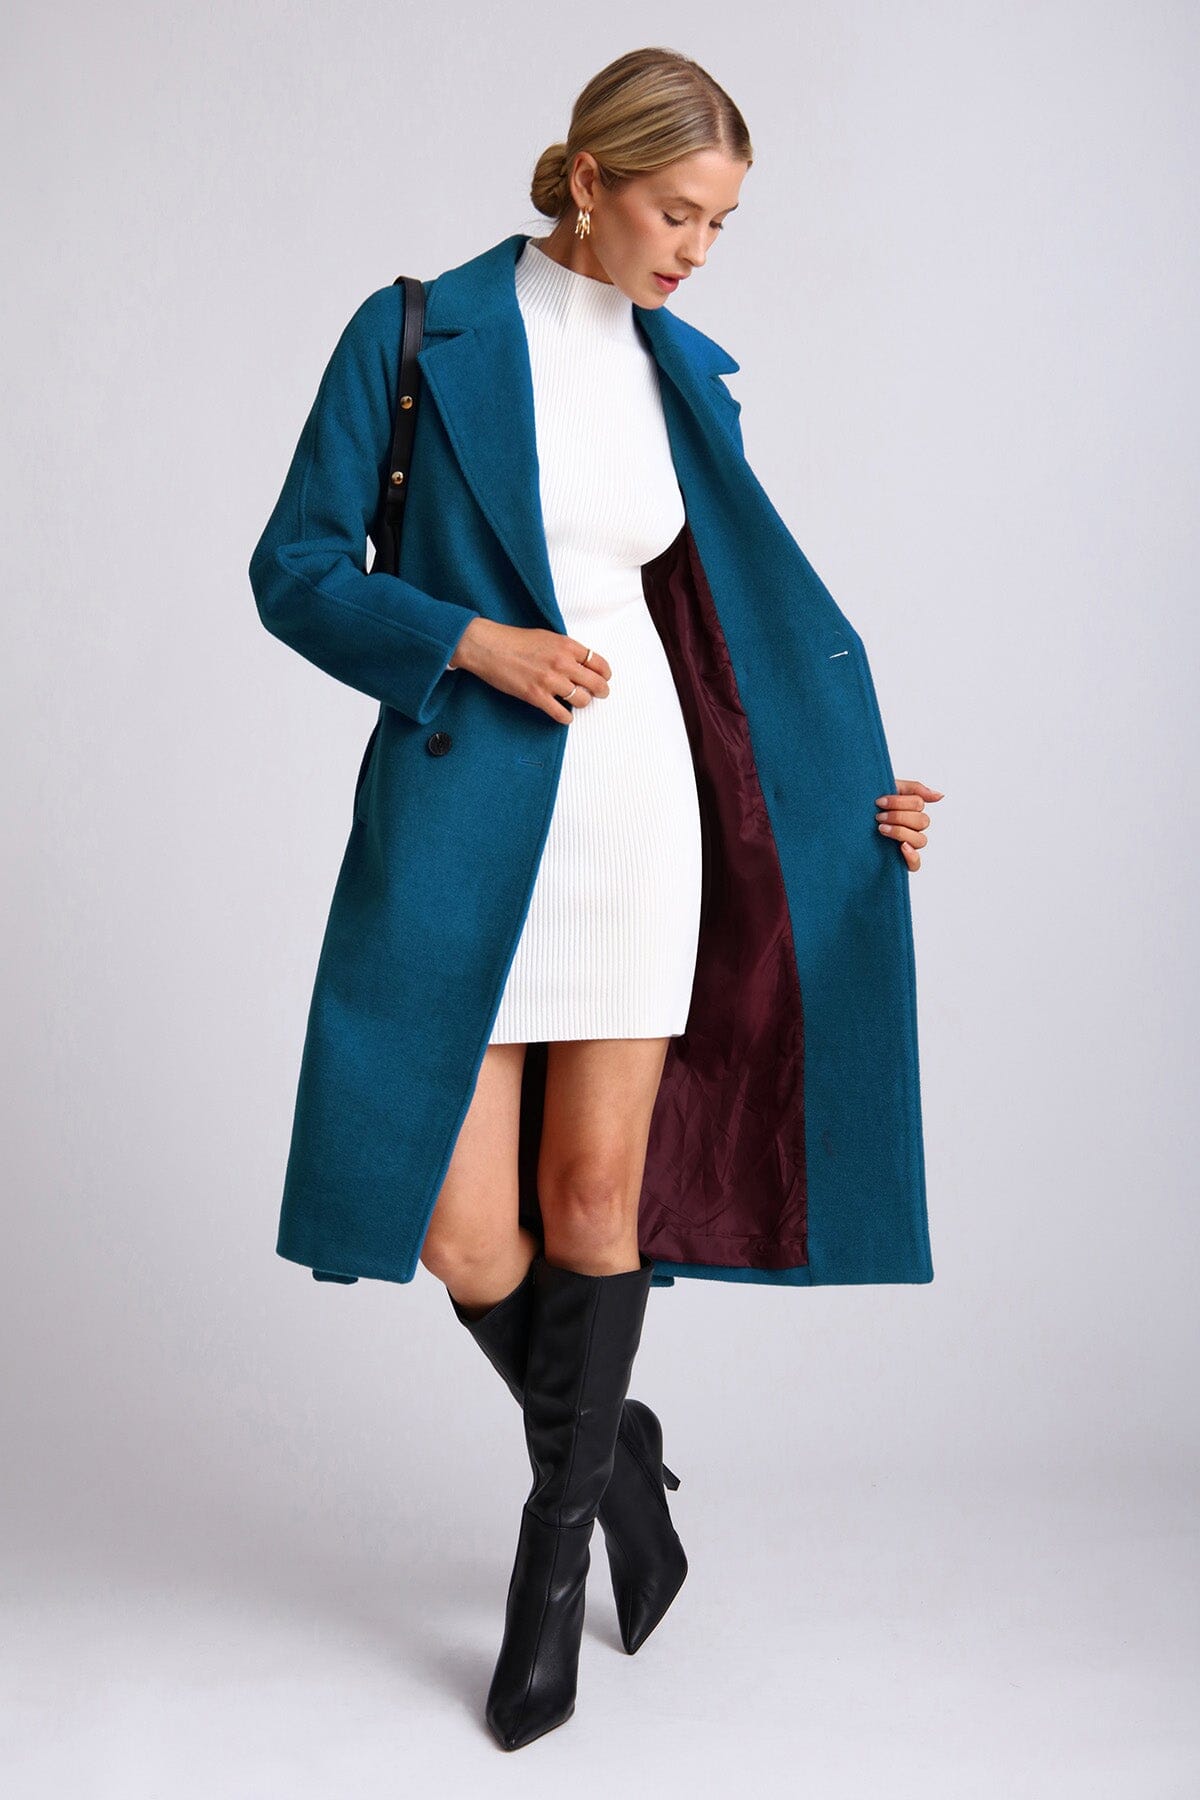 Mykonos blue wool blend belted walker coat - women's figure flattering date night coats outerwear for fall fashion trends